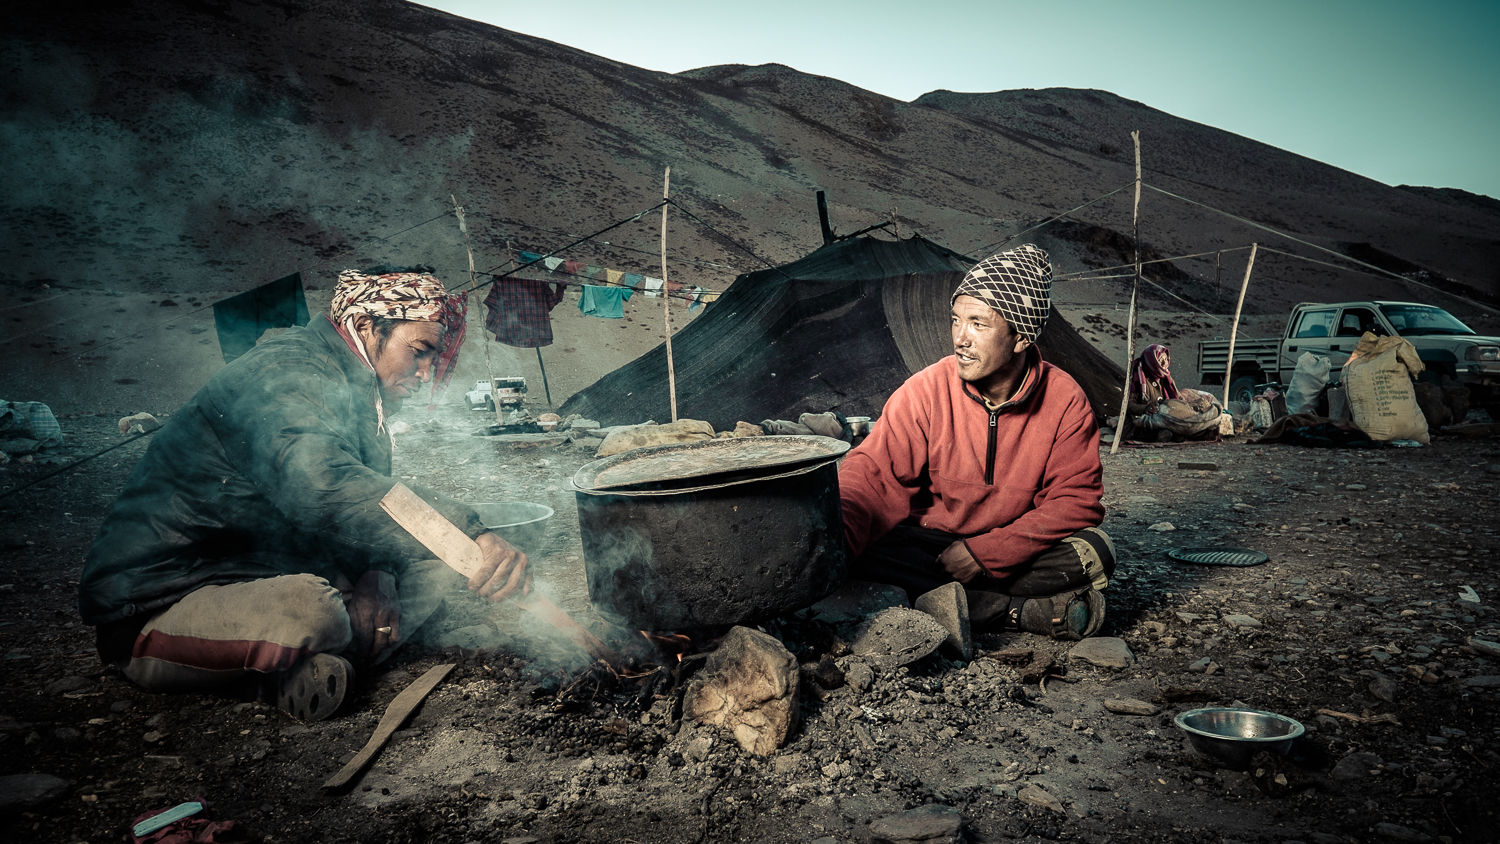  Nomad life, Ladakh 